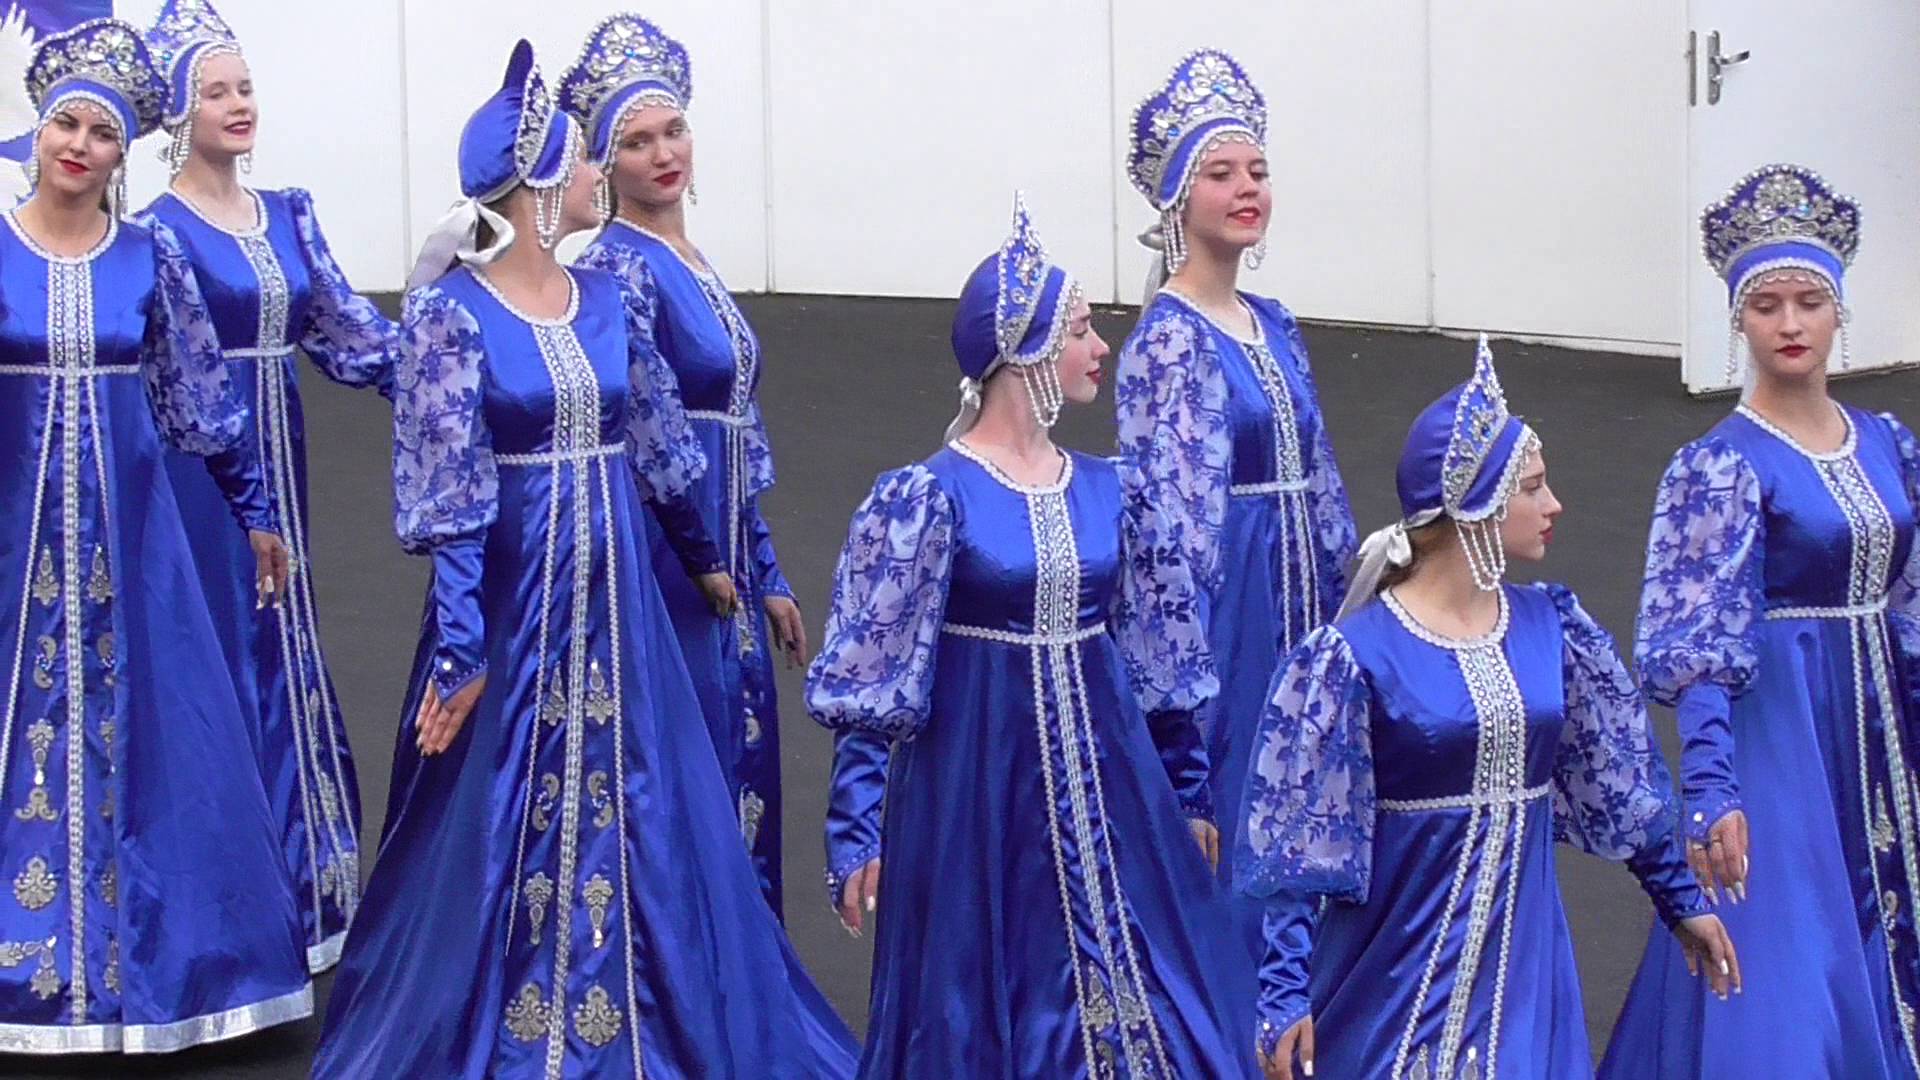 Танцевальный ансамбль в синих костюмах